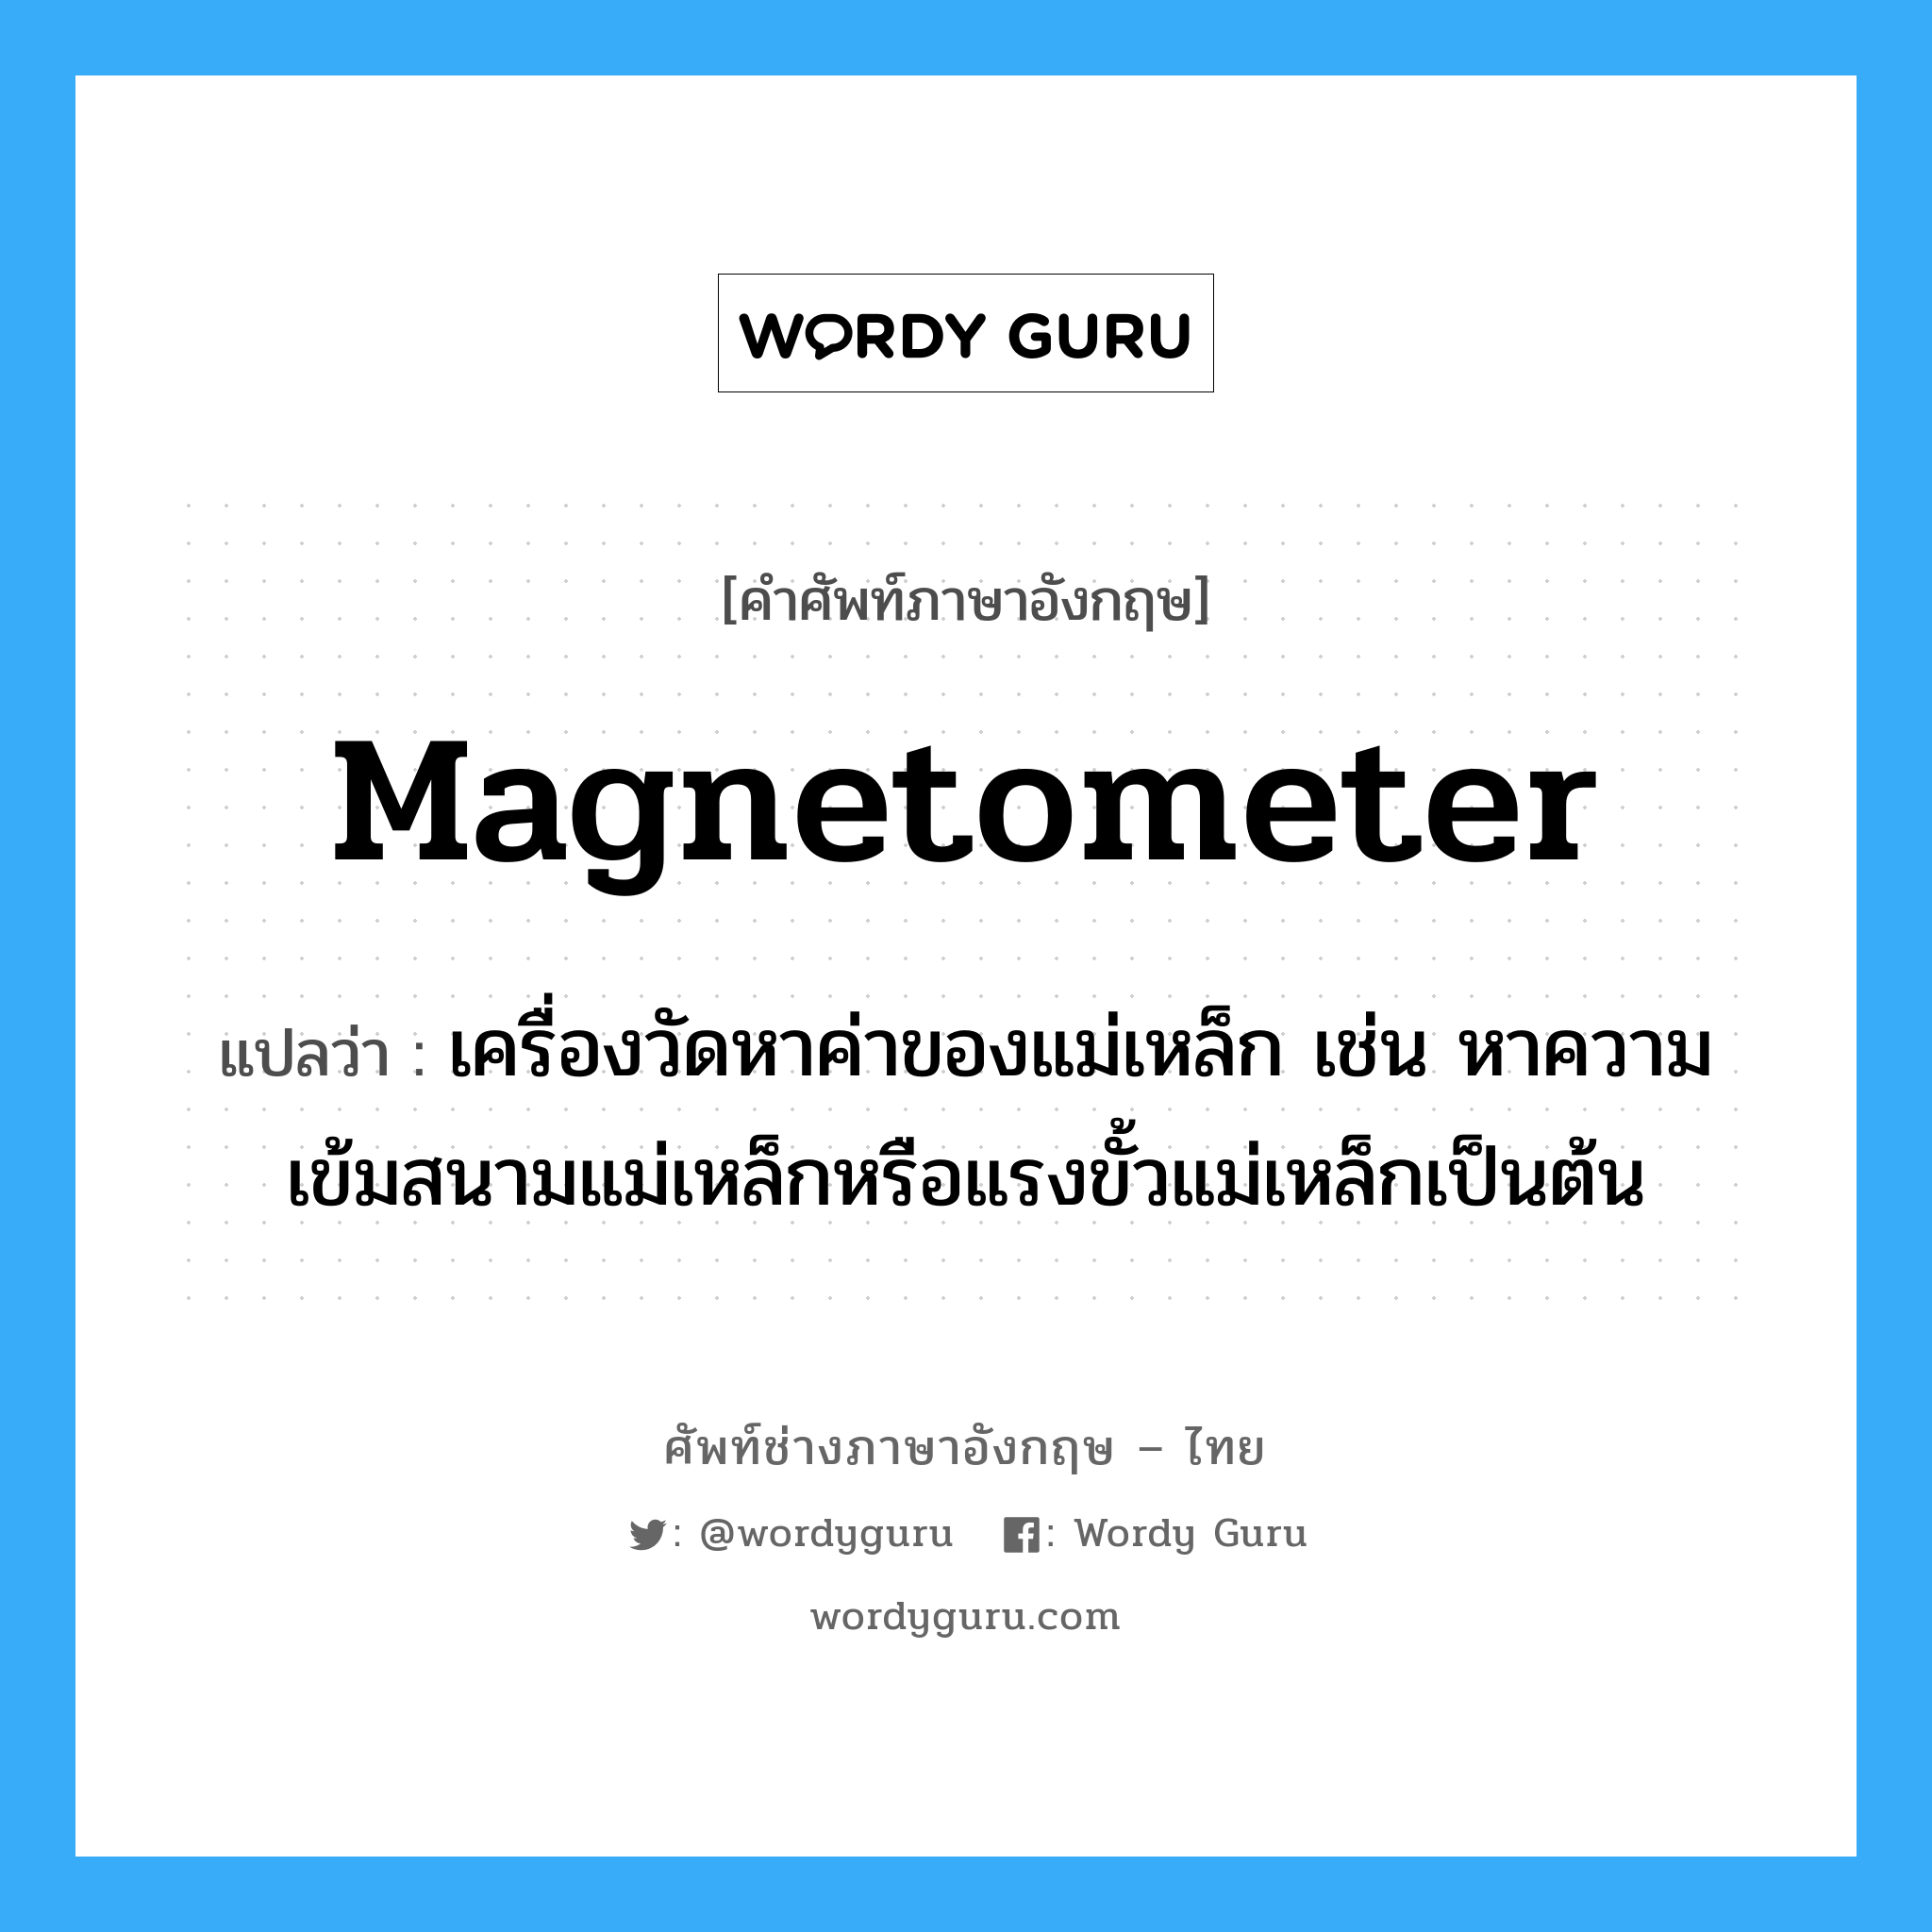 magnetometer แปลว่า?, คำศัพท์ช่างภาษาอังกฤษ - ไทย magnetometer คำศัพท์ภาษาอังกฤษ magnetometer แปลว่า เครื่องวัดหาค่าของแม่เหล็ก เช่น หาความเข้มสนามแม่เหล็กหรือแรงขั้วแม่เหล็กเป็นต้น